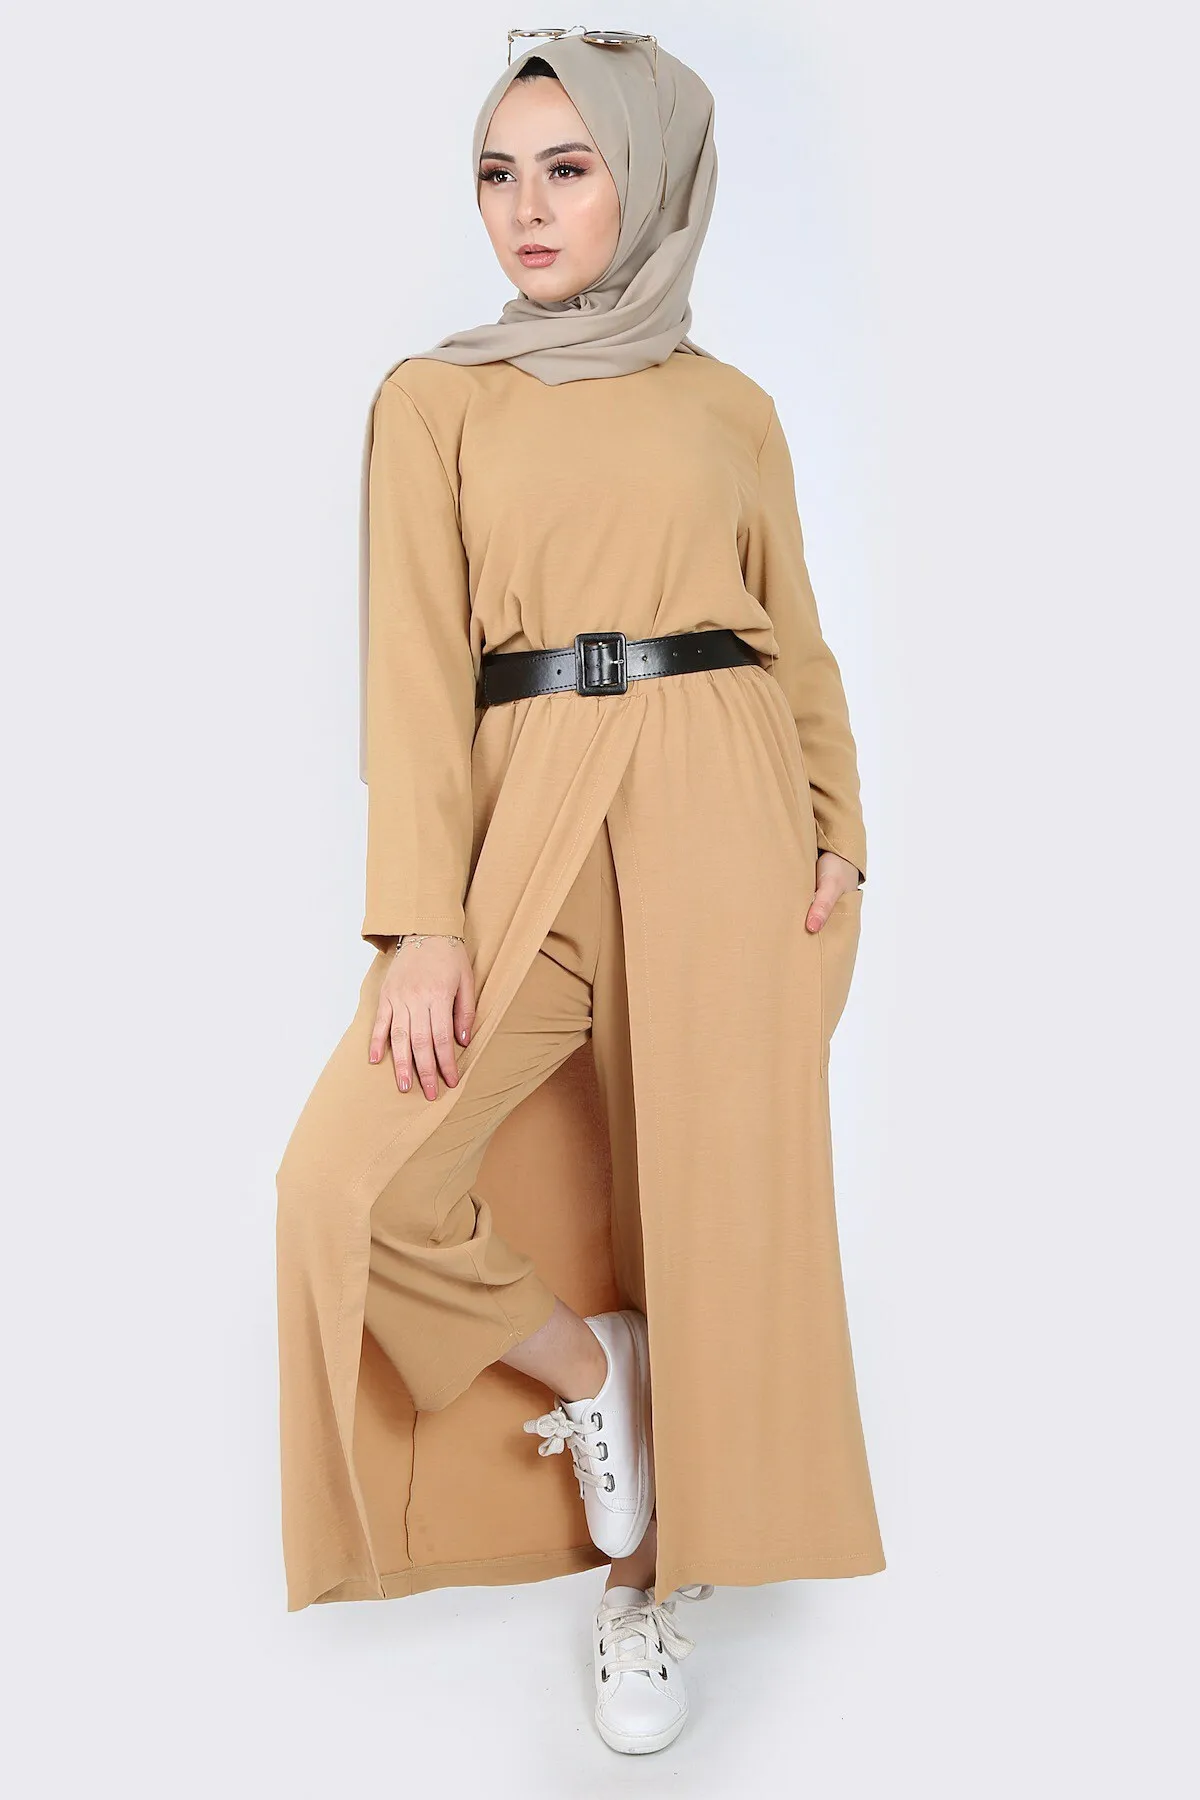 Женский четырехъядерный костюм хиджаб комбин Нижняя верхняя мусульманская одежда хиджаб мусульманские ustleri Женский костюм платье abayas